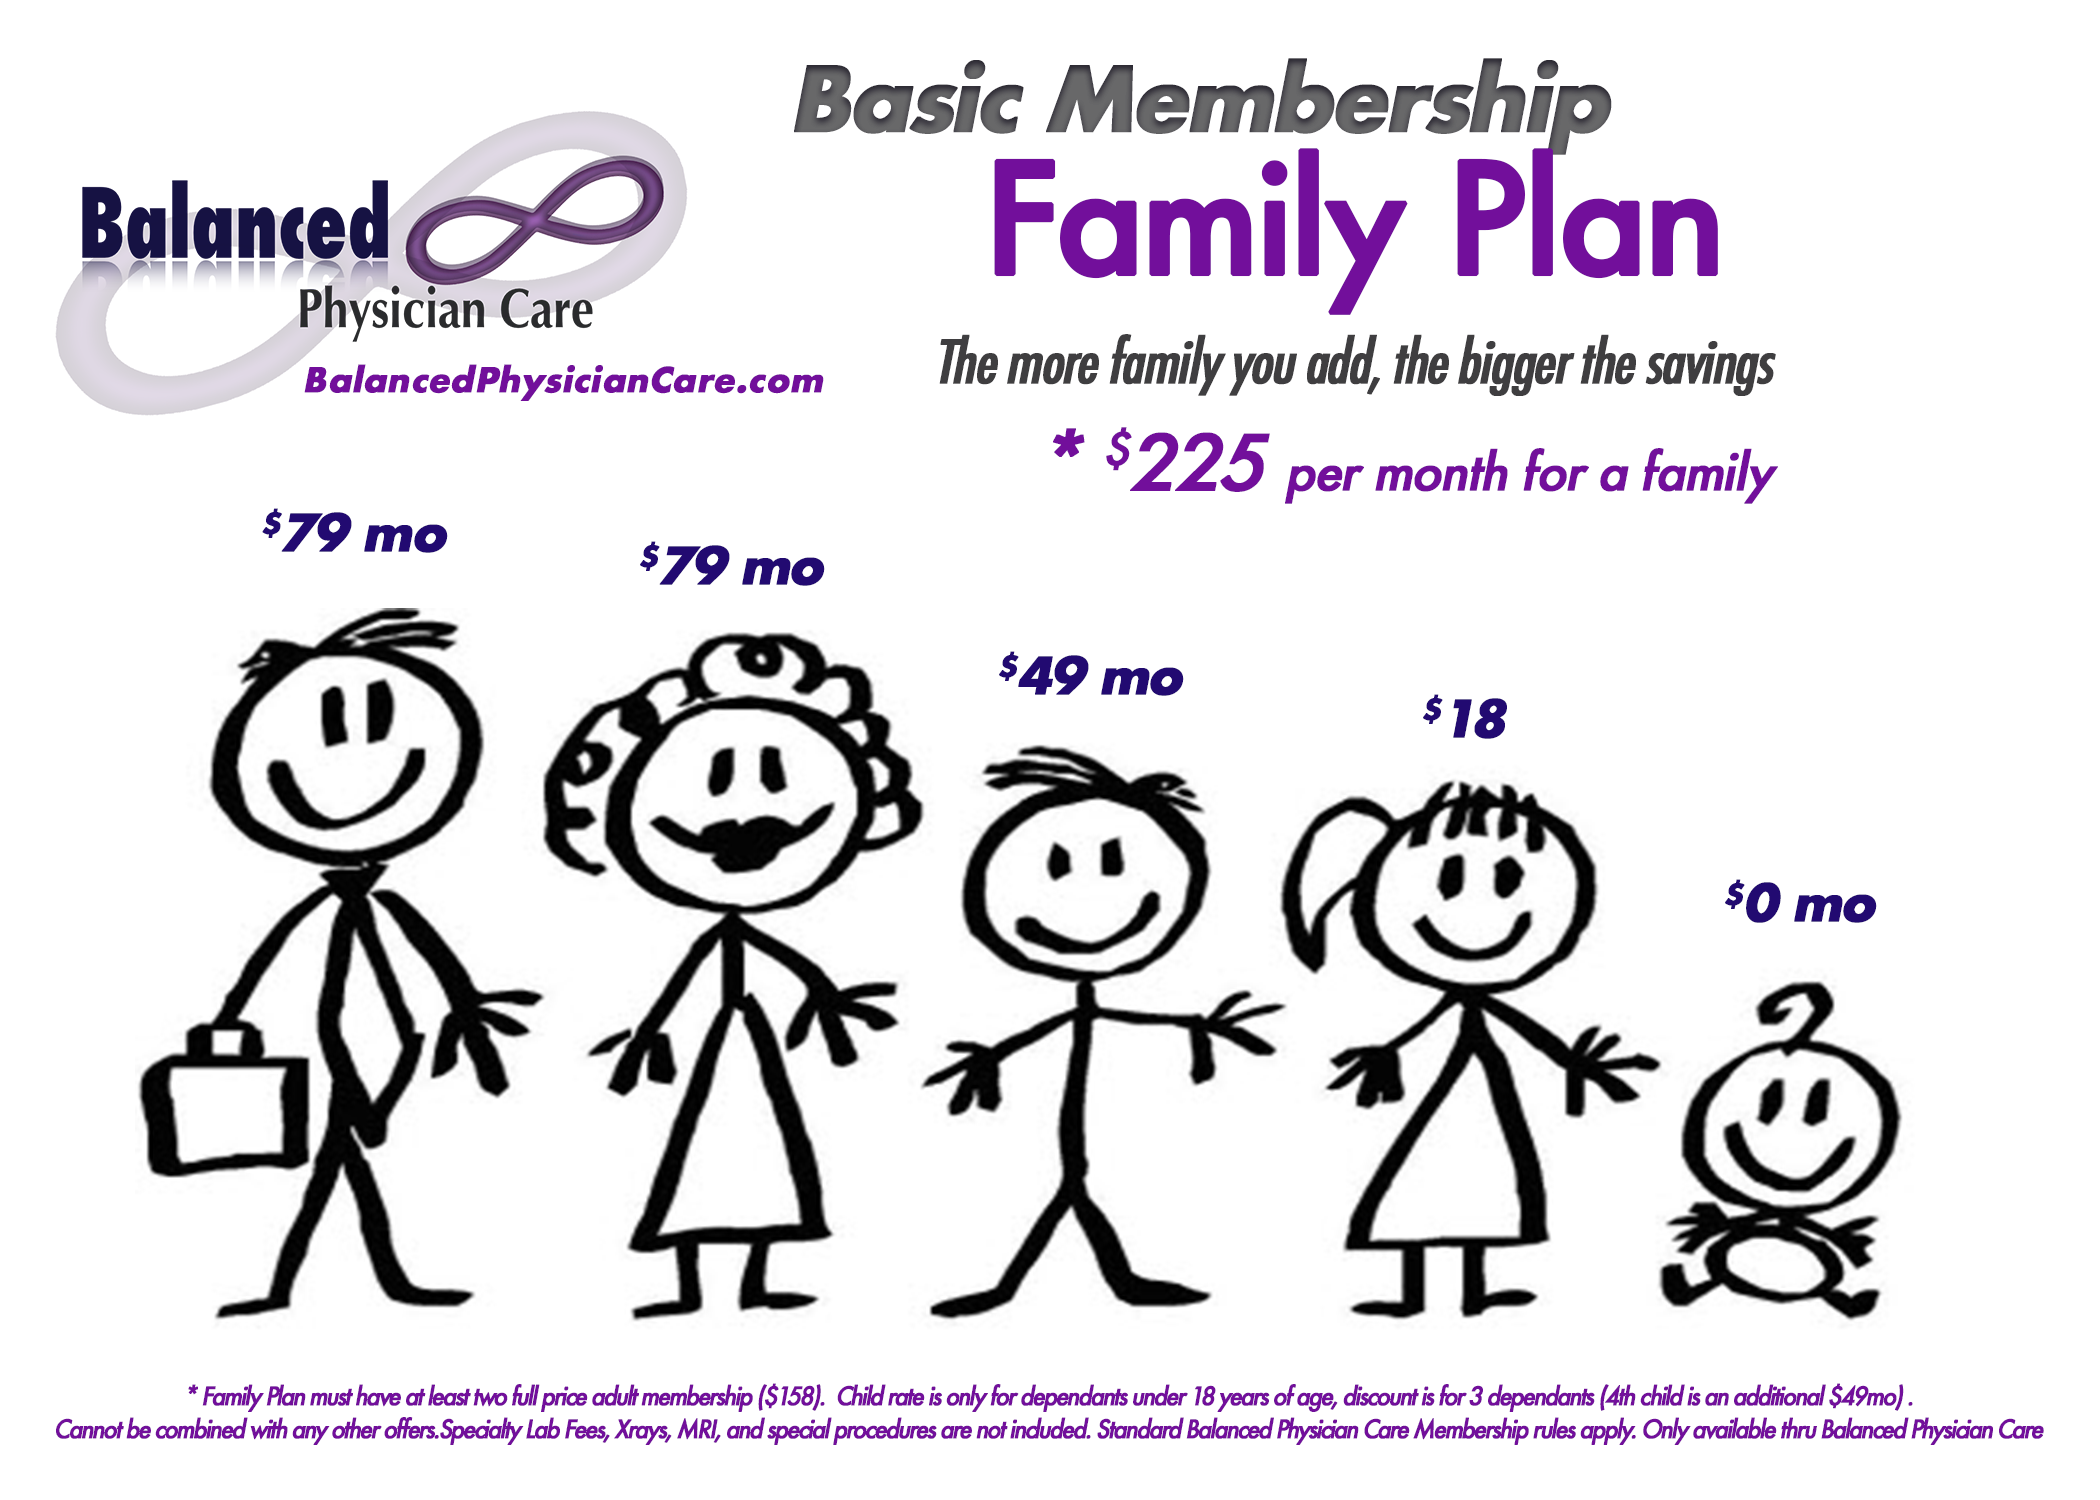 Basic Family Plan $225